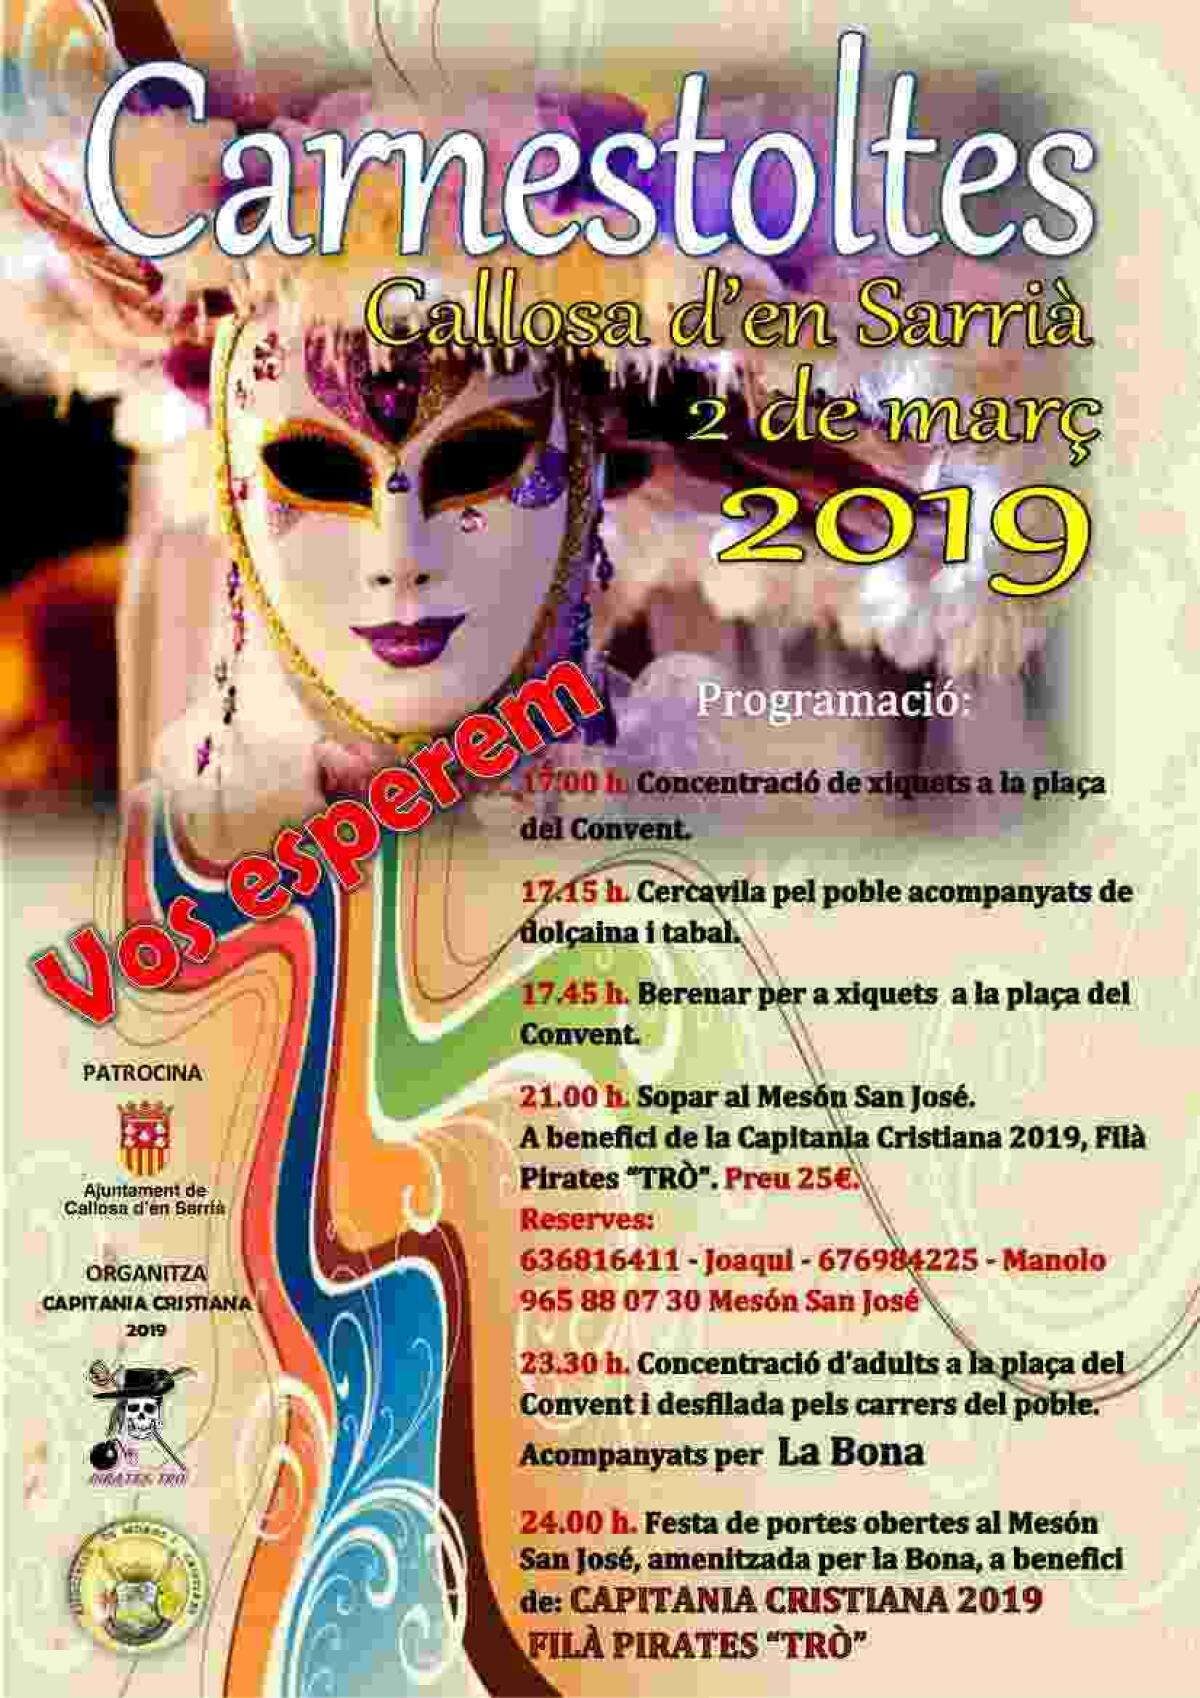   Callosa d’en Sarrià celebrará la fiesta de Carnaval el próximo 2 de marzo